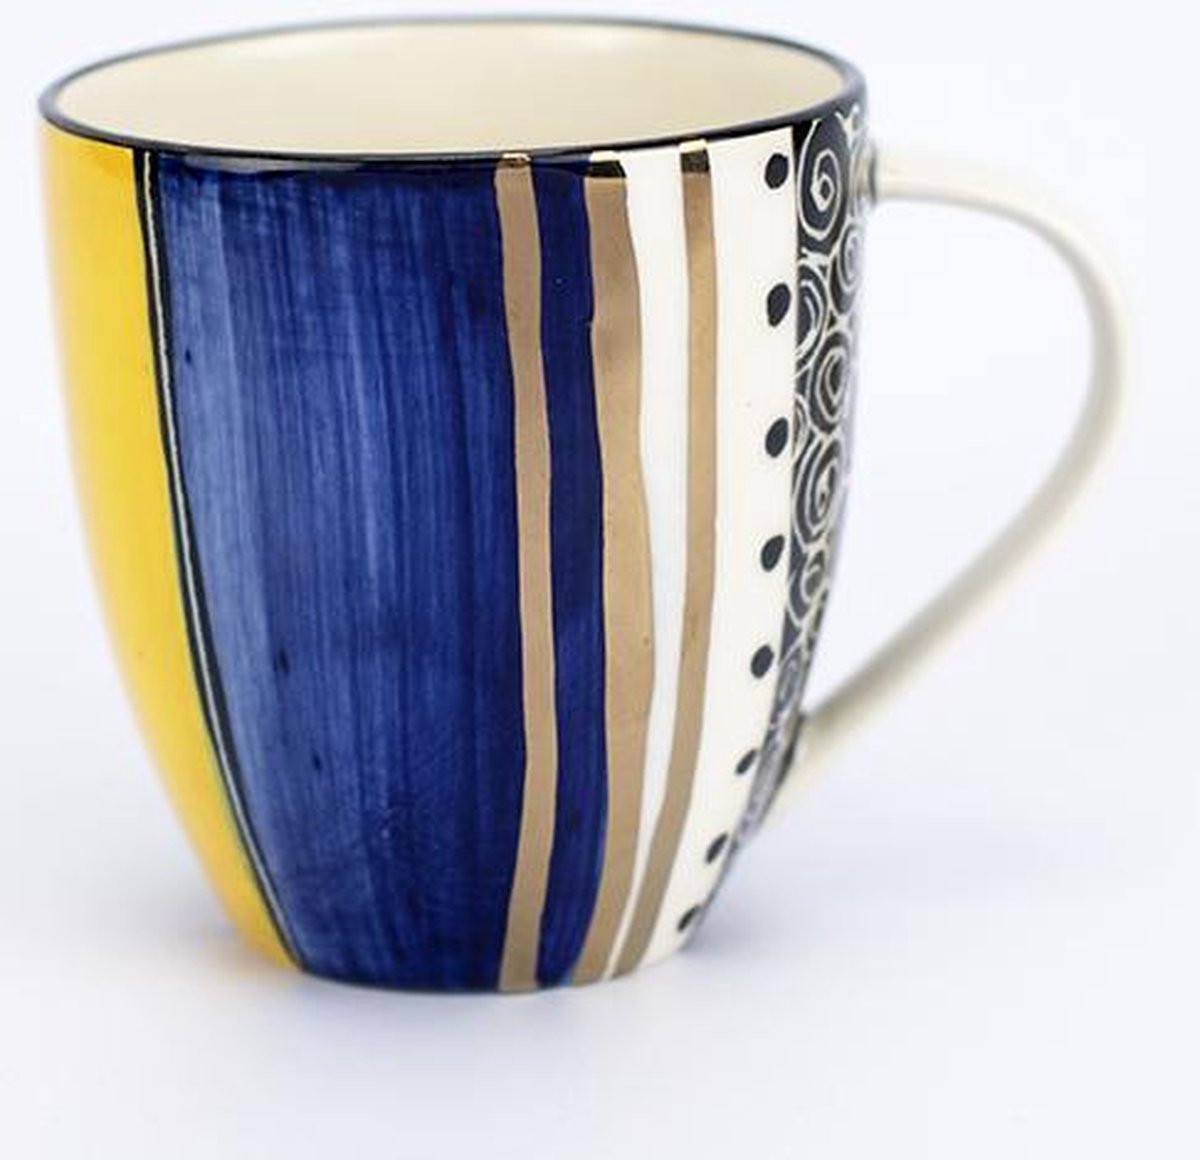 Koffiemok / Theebeker - Koffiekopjes - Letsopa Ceramics - Model: Lichtgroen-Geel-Blauw | Handgemaakt in Zuid Afrika - hoogwaardig keramiek - speciaal gemaakt voor Nwabisa African Art - Prachtig om kado te doen of zelf te gebruiken